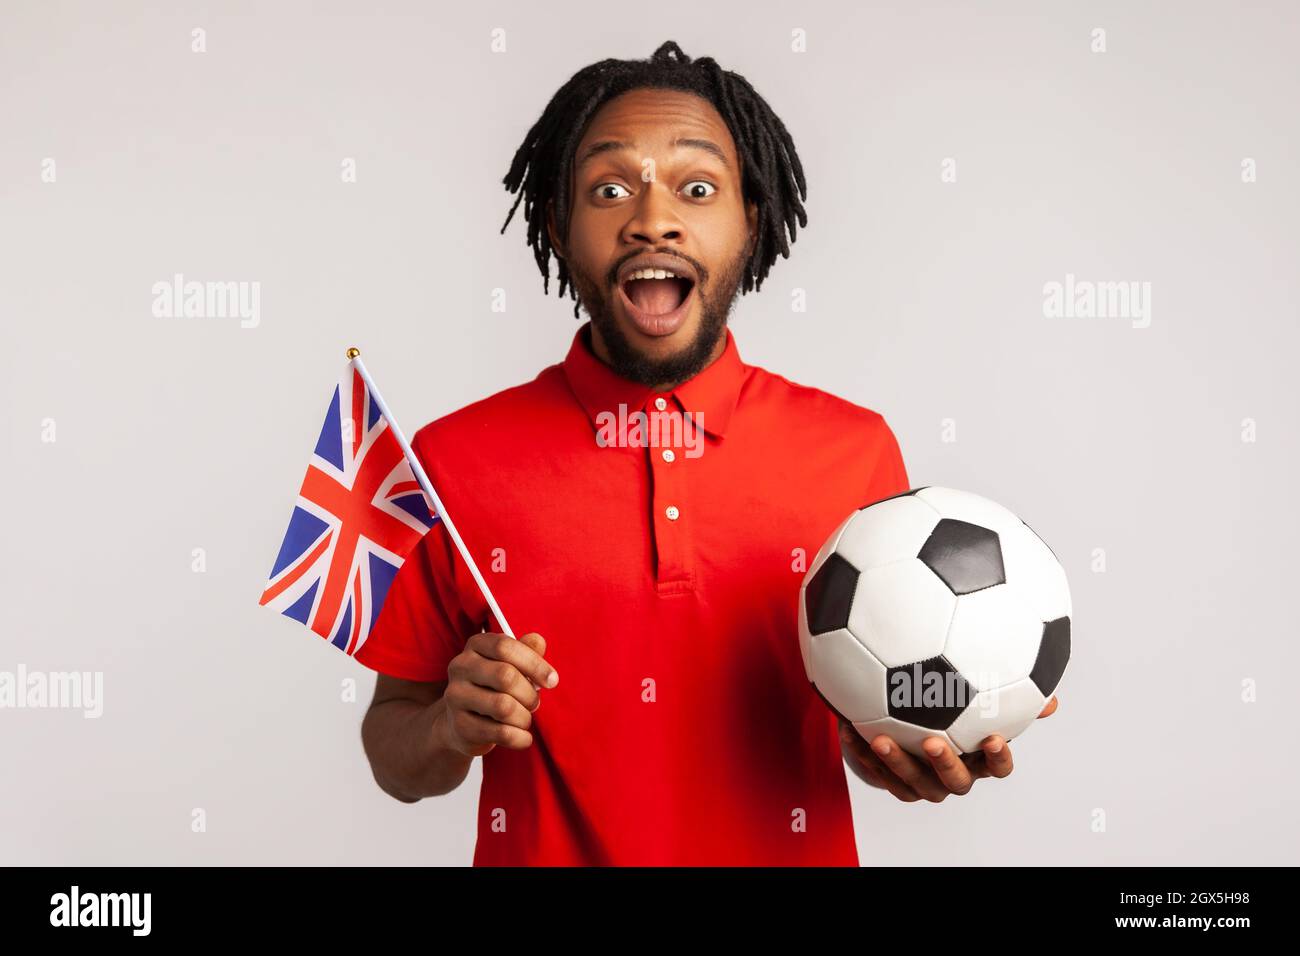 L'uomo stupito eccitato con i dreadlock che indossano una T-shirt rossa casual, che tiene la bandiera britannica e la palla di calcio in bianco e nero, la lega di calcio unita. Studio interno girato isolato su sfondo grigio. Foto Stock